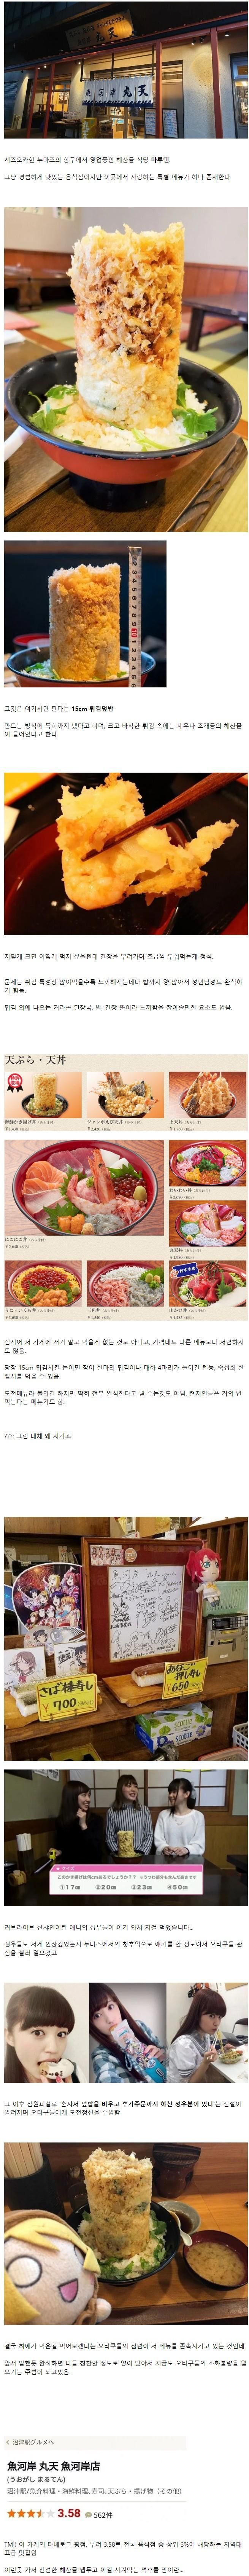 일본 식당의 씹덕저격 도전메뉴